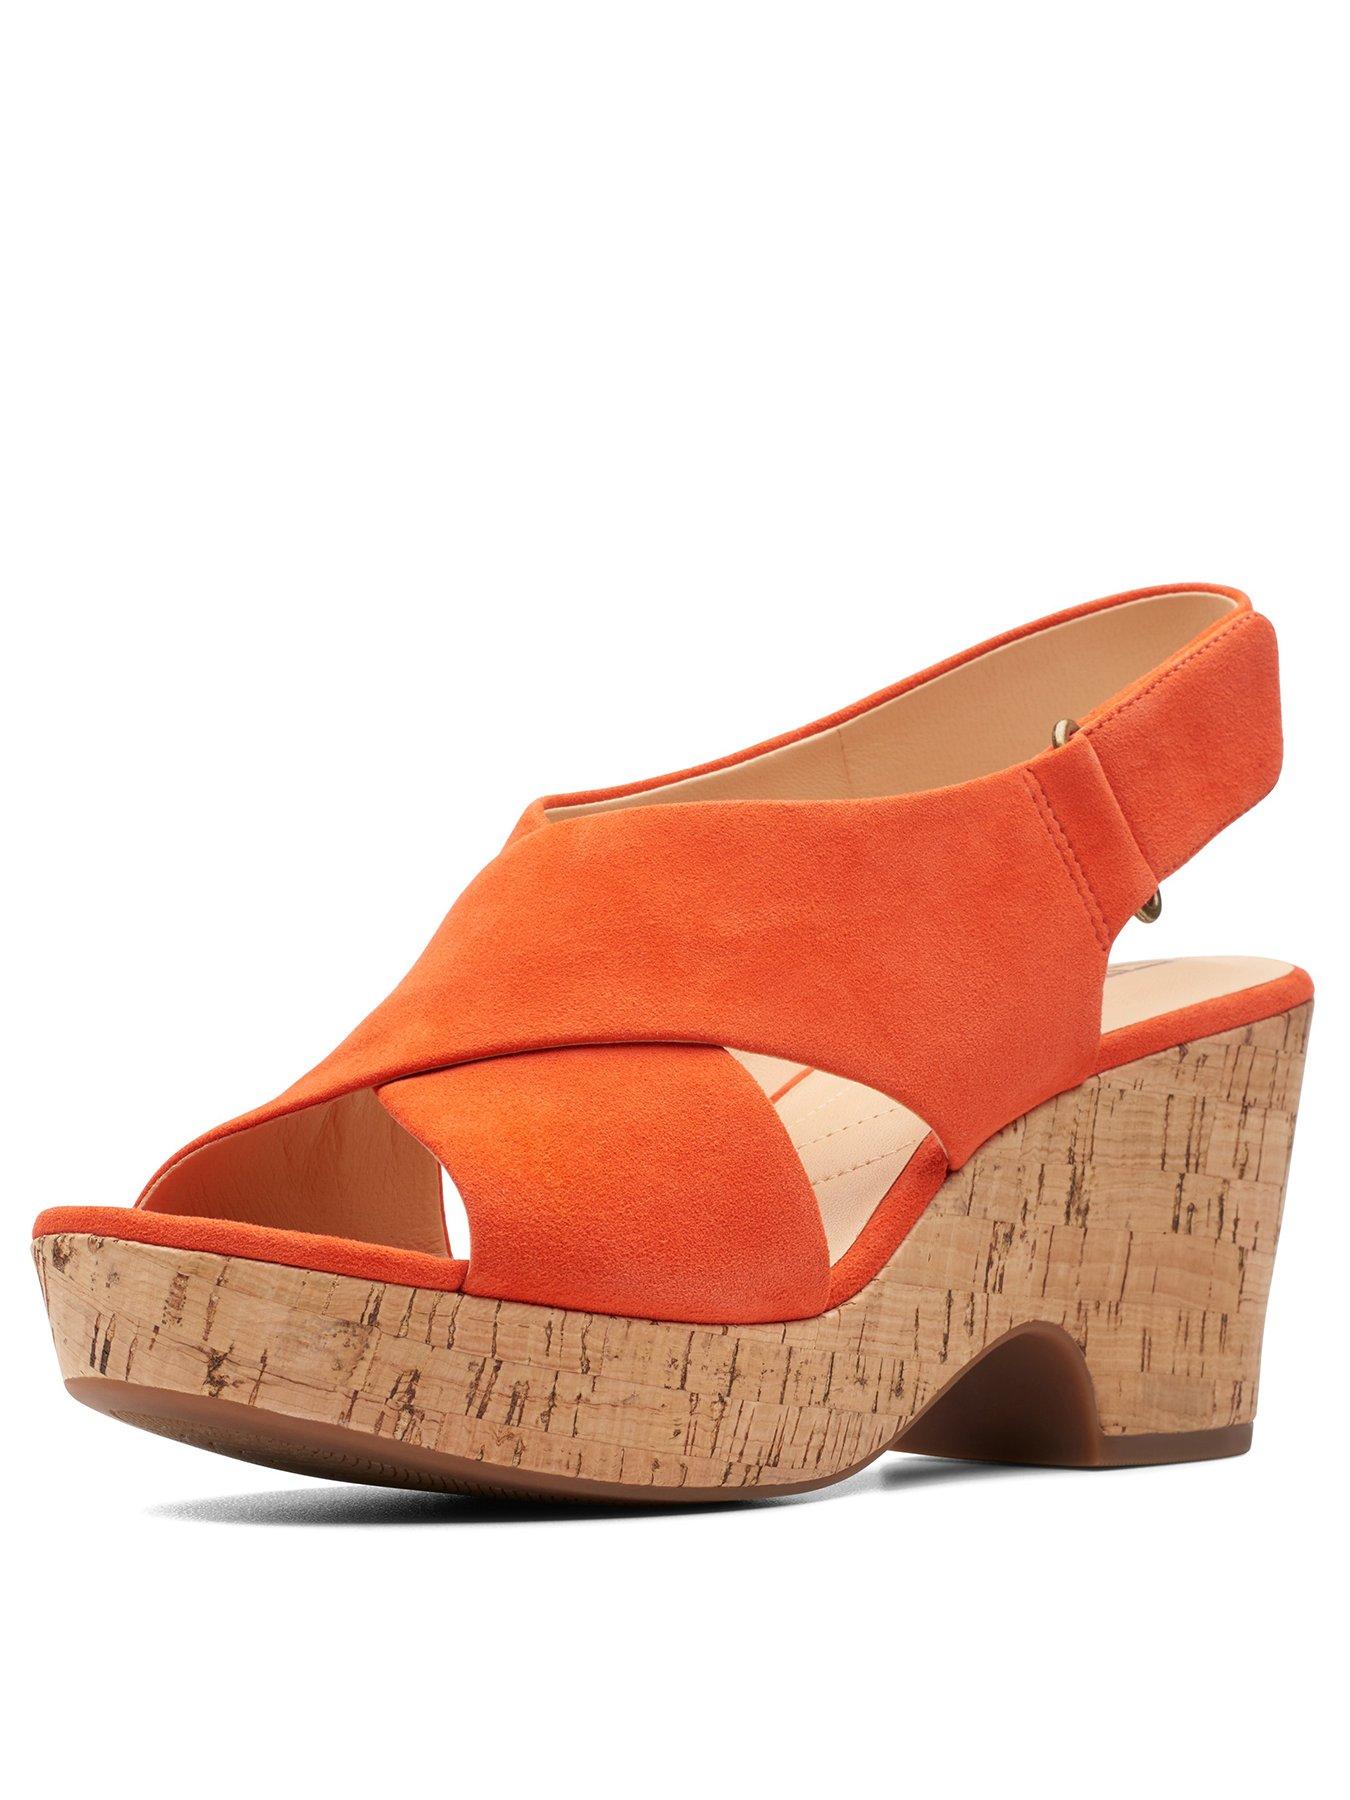 clarks orange wedge sandals